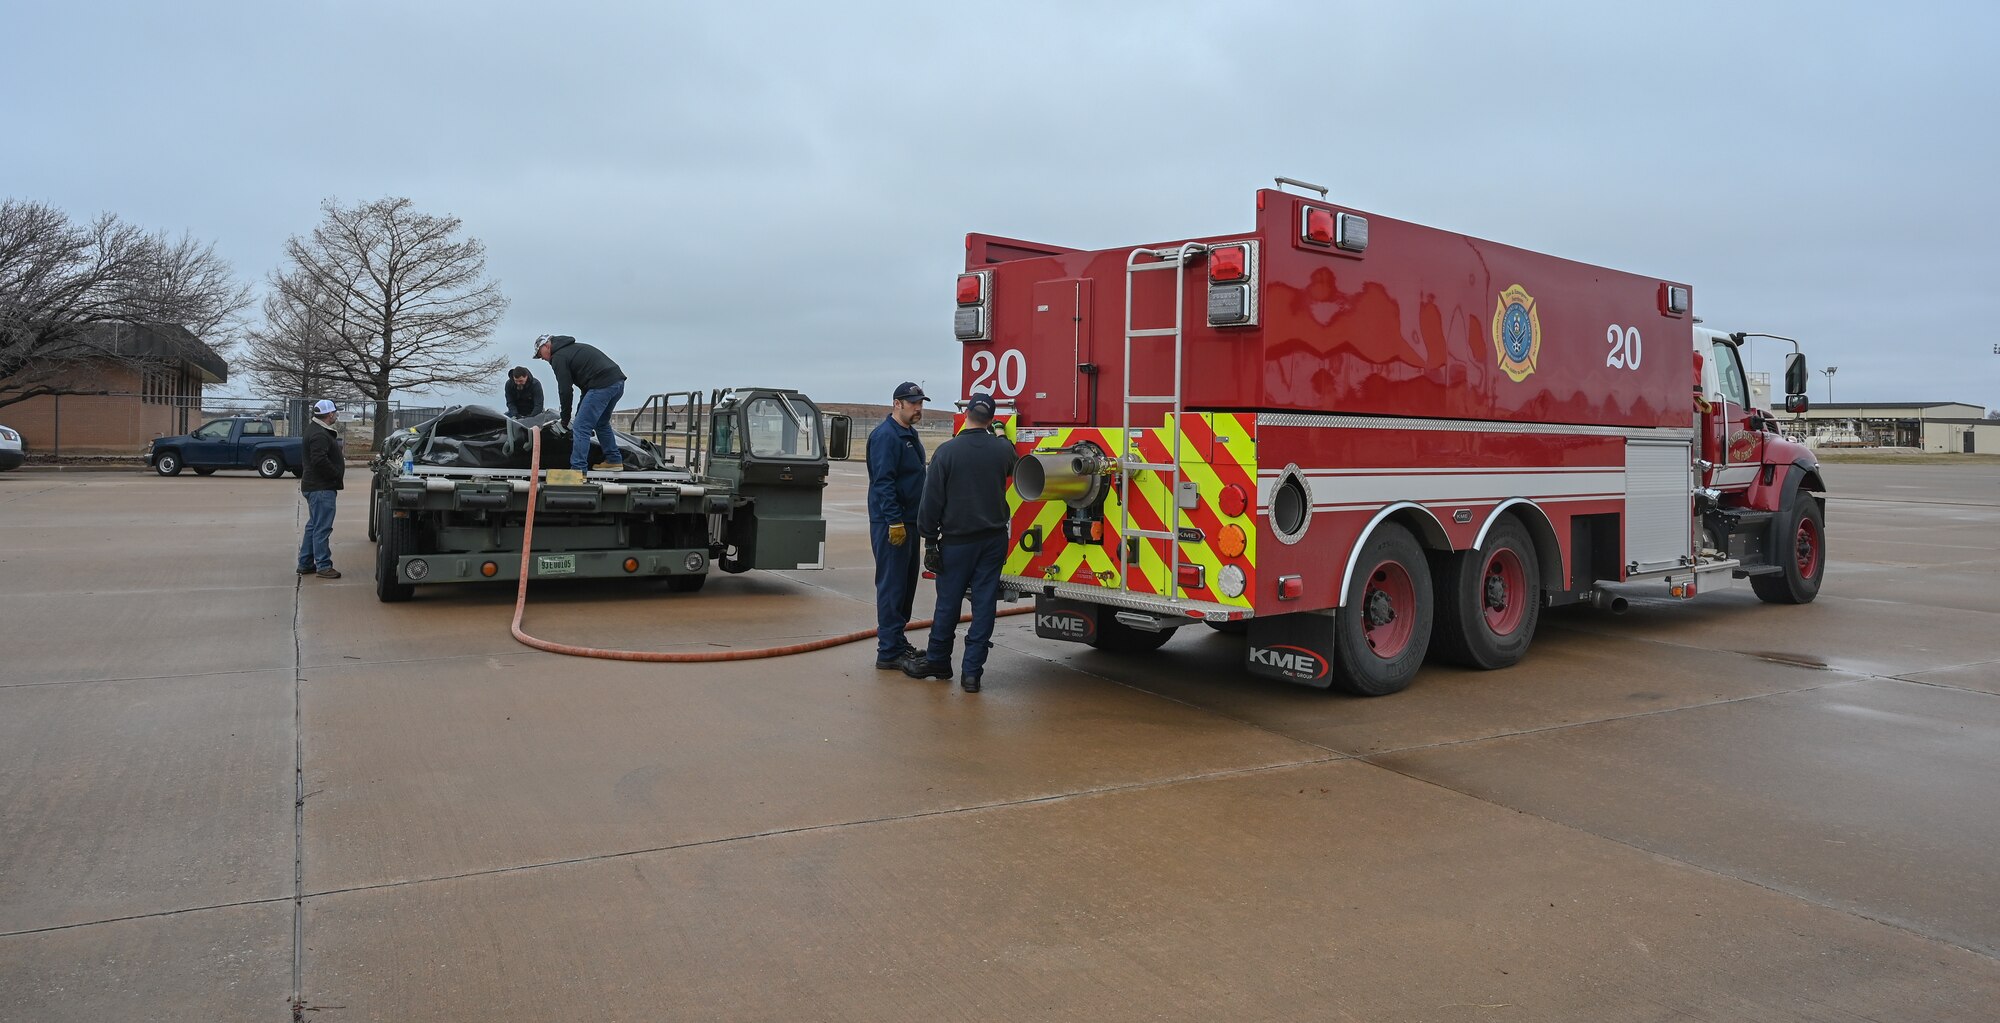 A firetruck pumps water into a fuel bladder